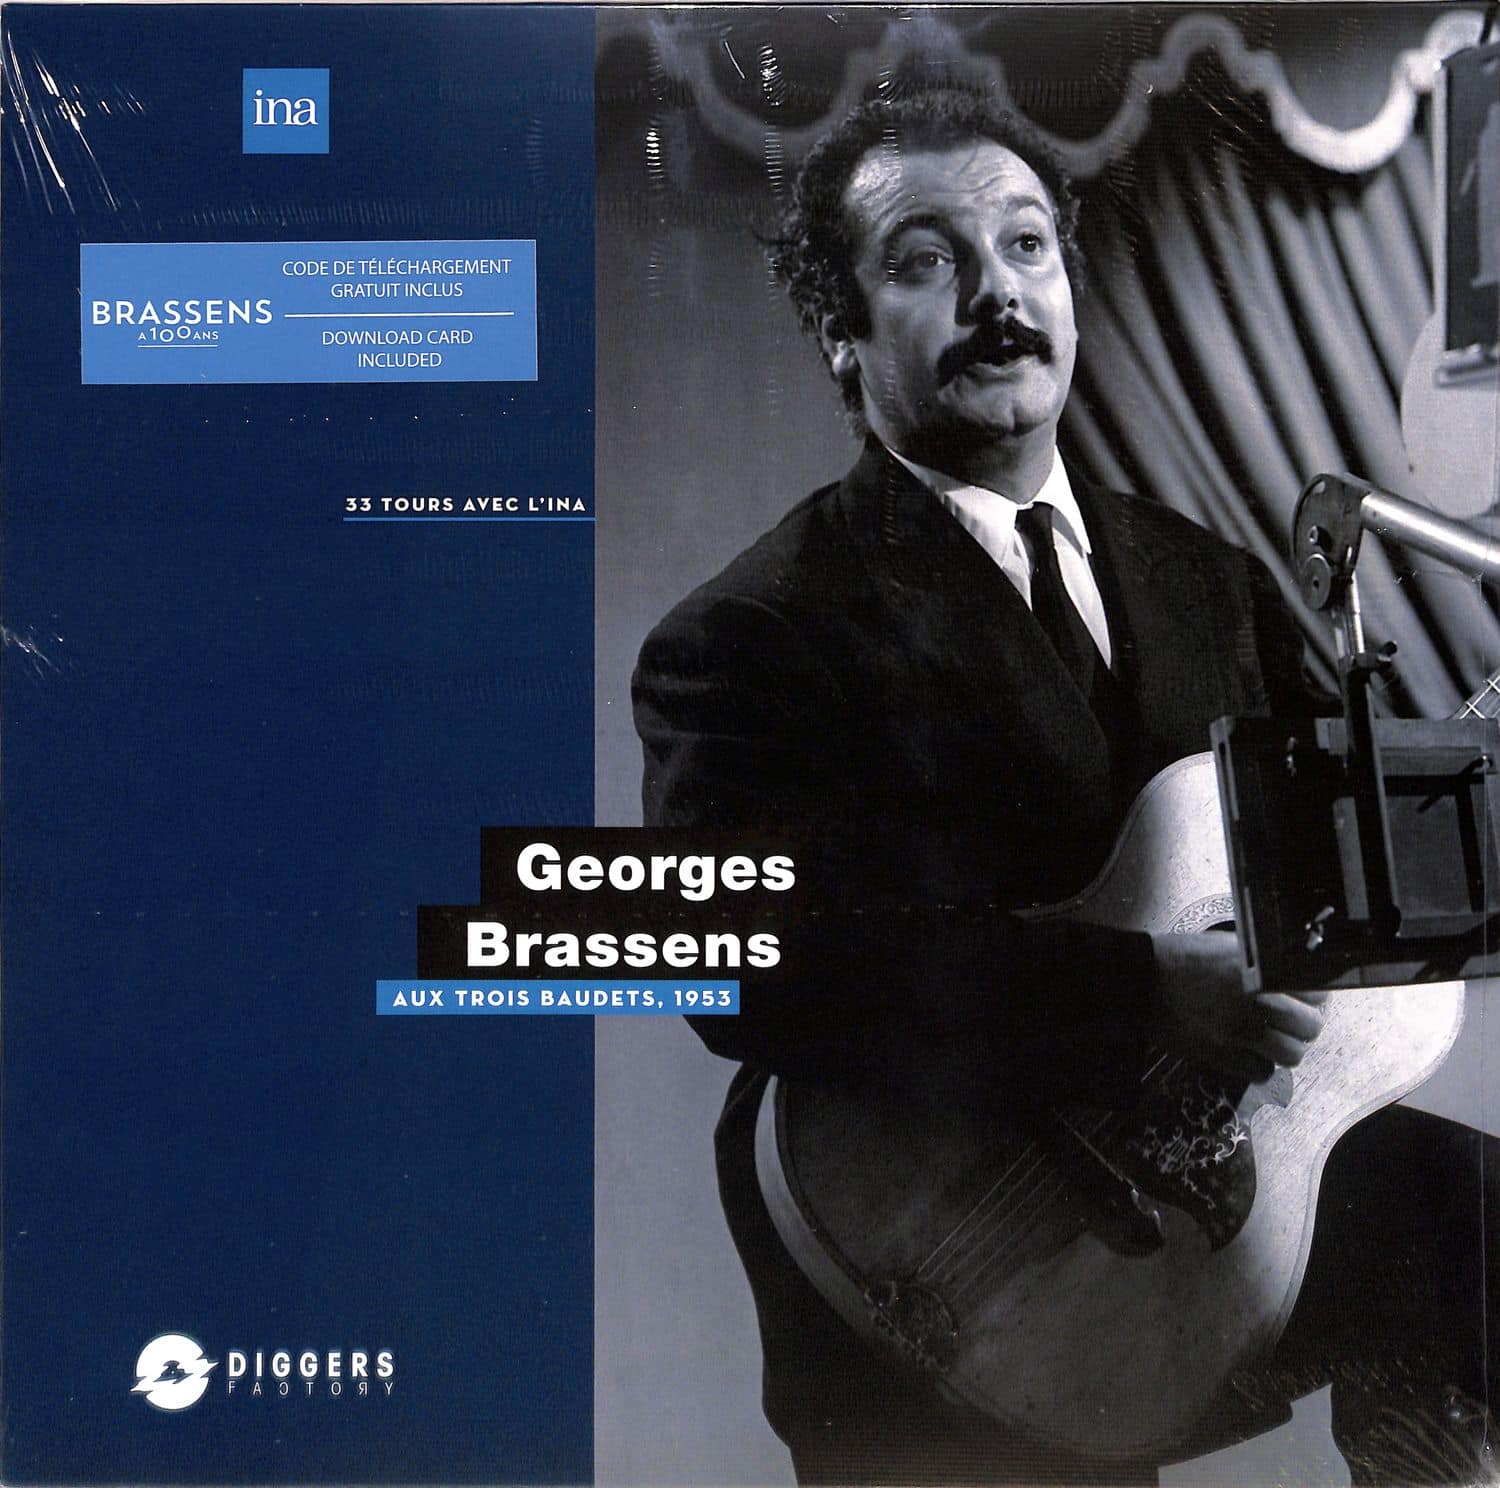 Georges Brassens - AUX TROIS BAUDETS, 1953 